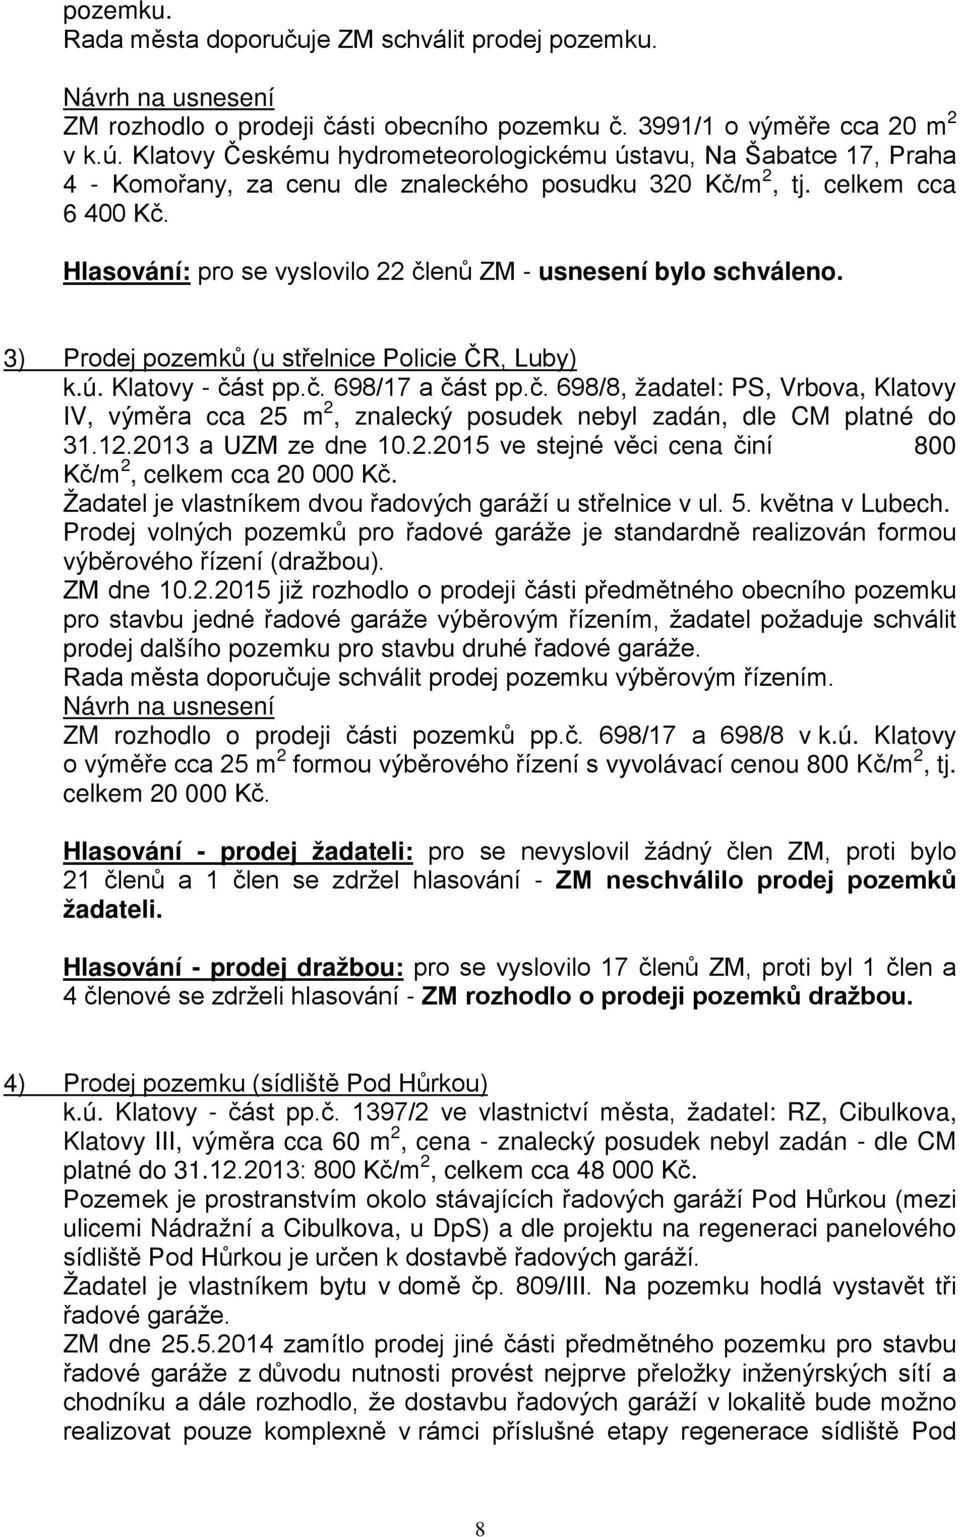 Hlasování: pro se vyslovilo 22 členů ZM - usnesení bylo schváleno. 3) Prodej pozemků (u střelnice Policie ČR, Luby) k.ú. Klatovy - část pp.č. 698/17 a část pp.č. 698/8, žadatel: PS, Vrbova, Klatovy IV, výměra cca 25 m 2, znalecký posudek nebyl zadán, dle CM platné do 31.